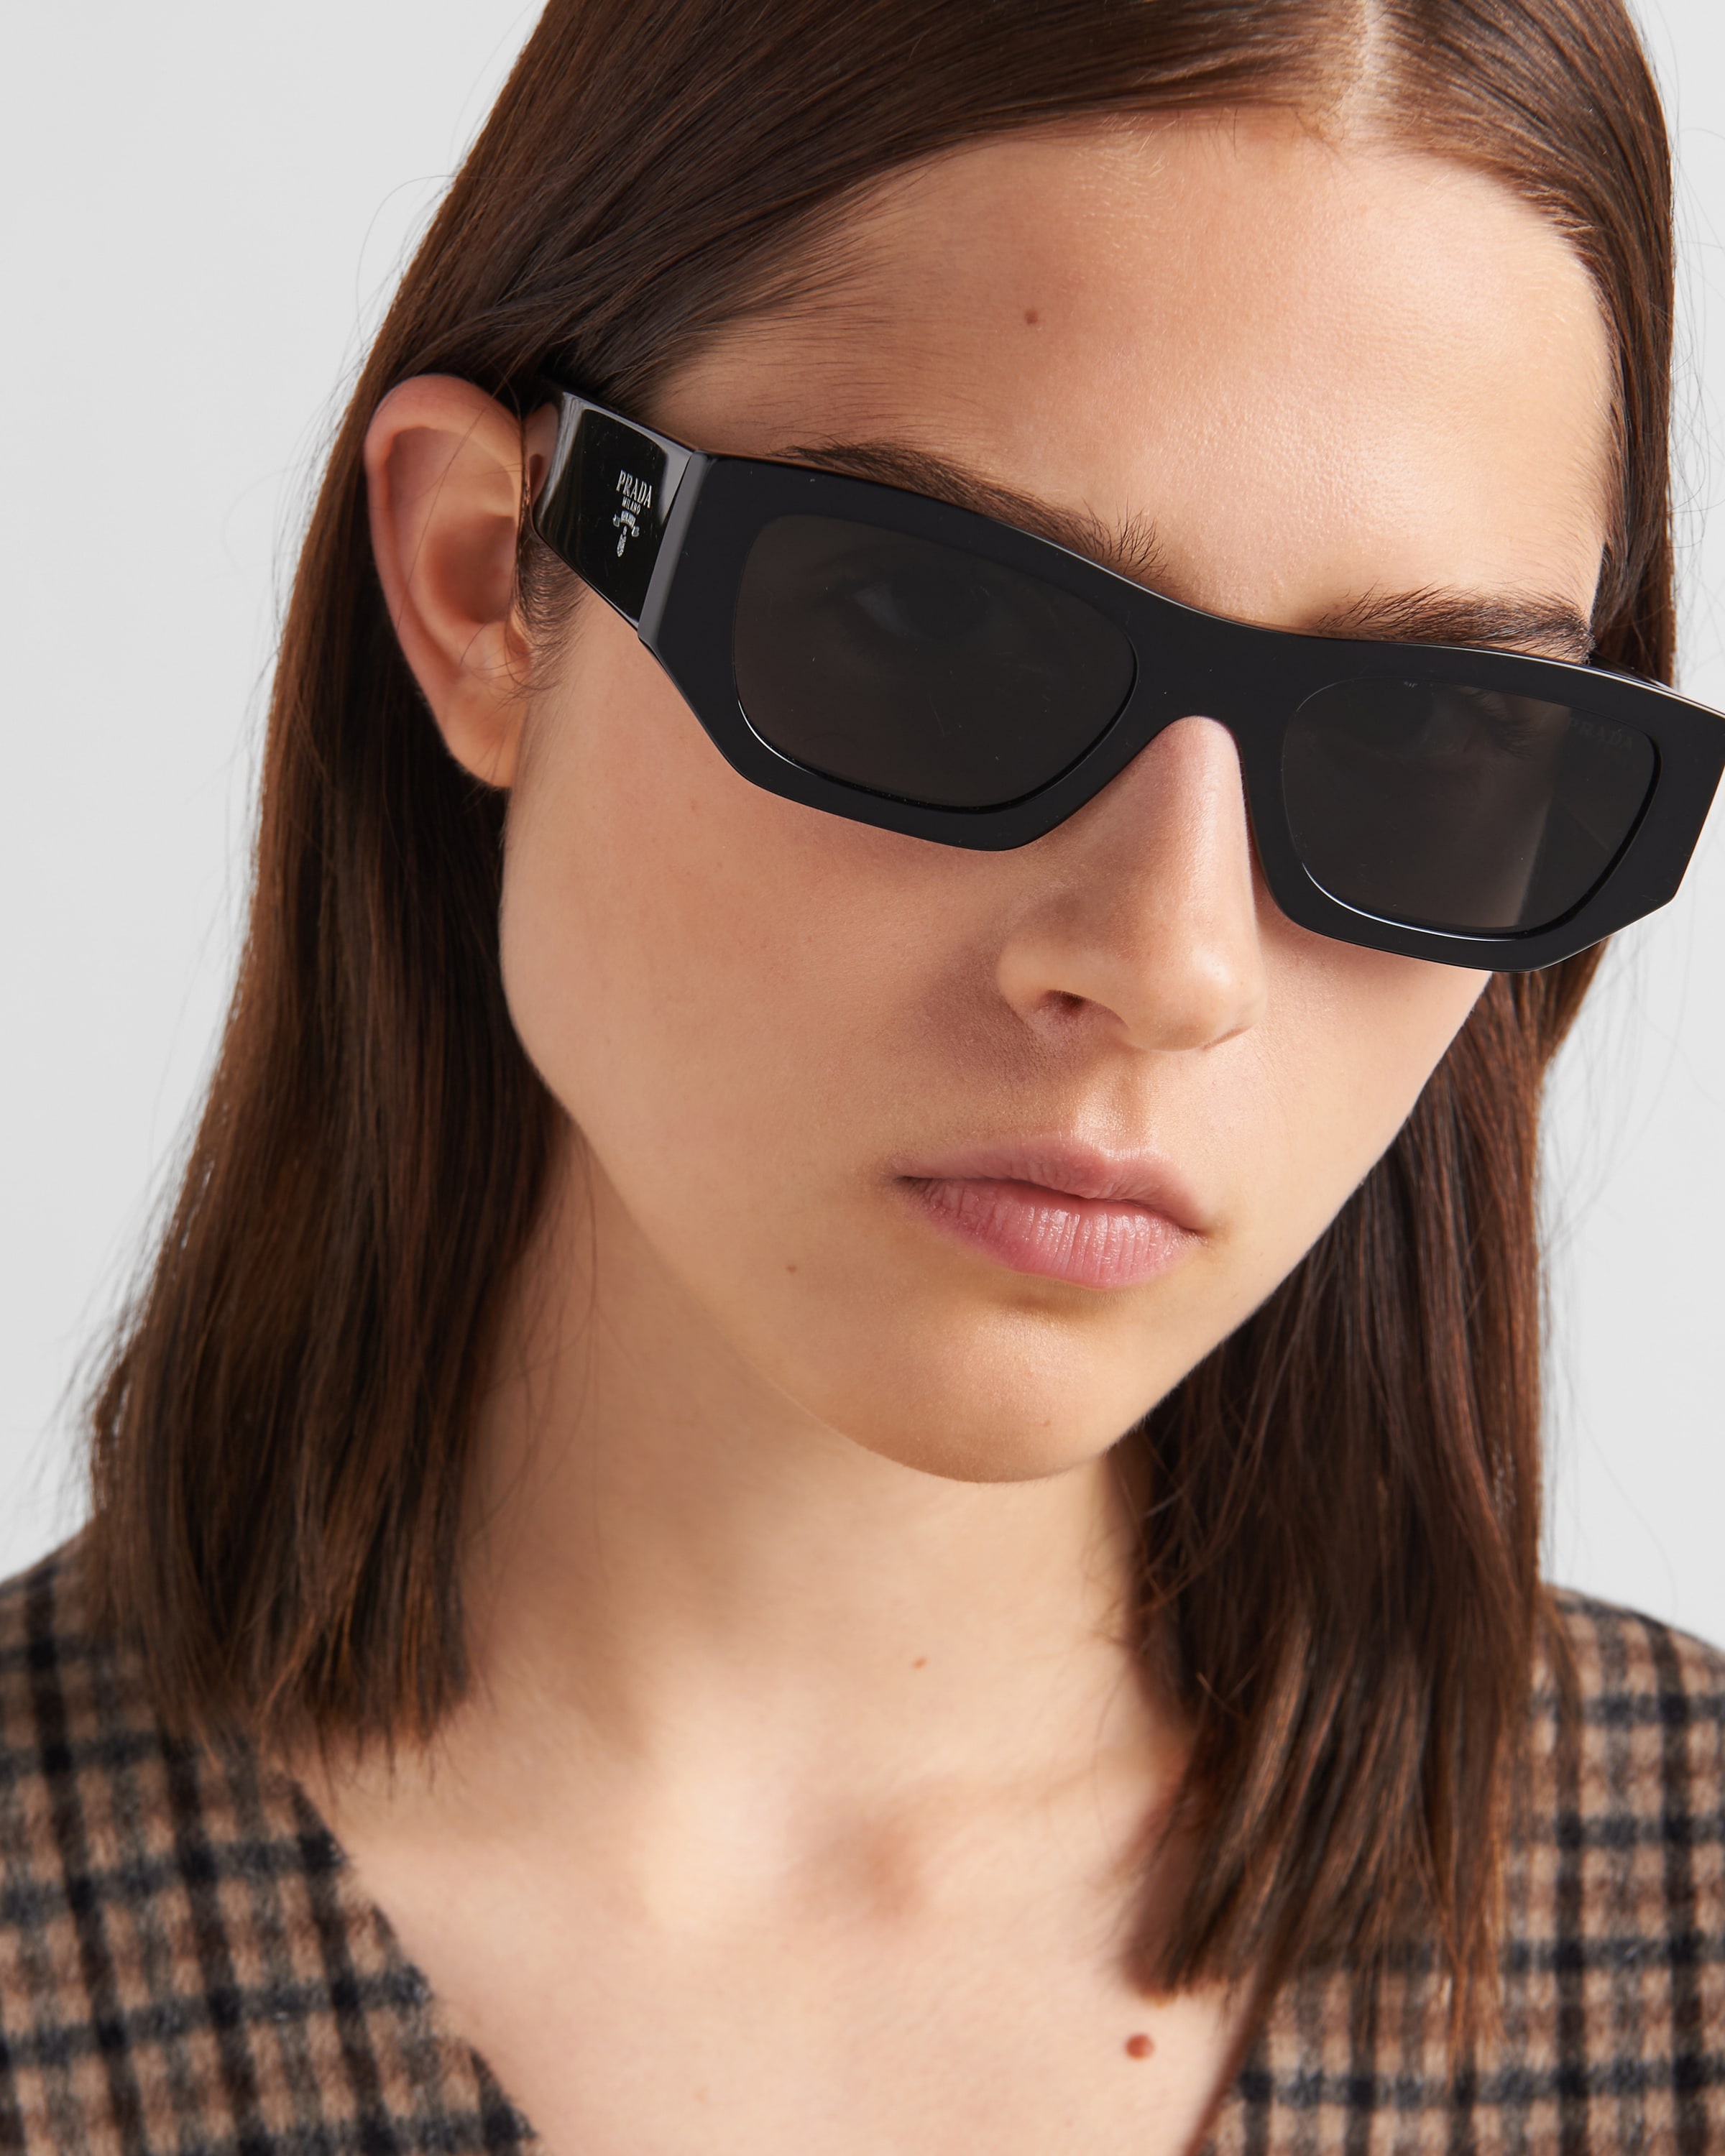 Sunglasses with Prada logo - 6